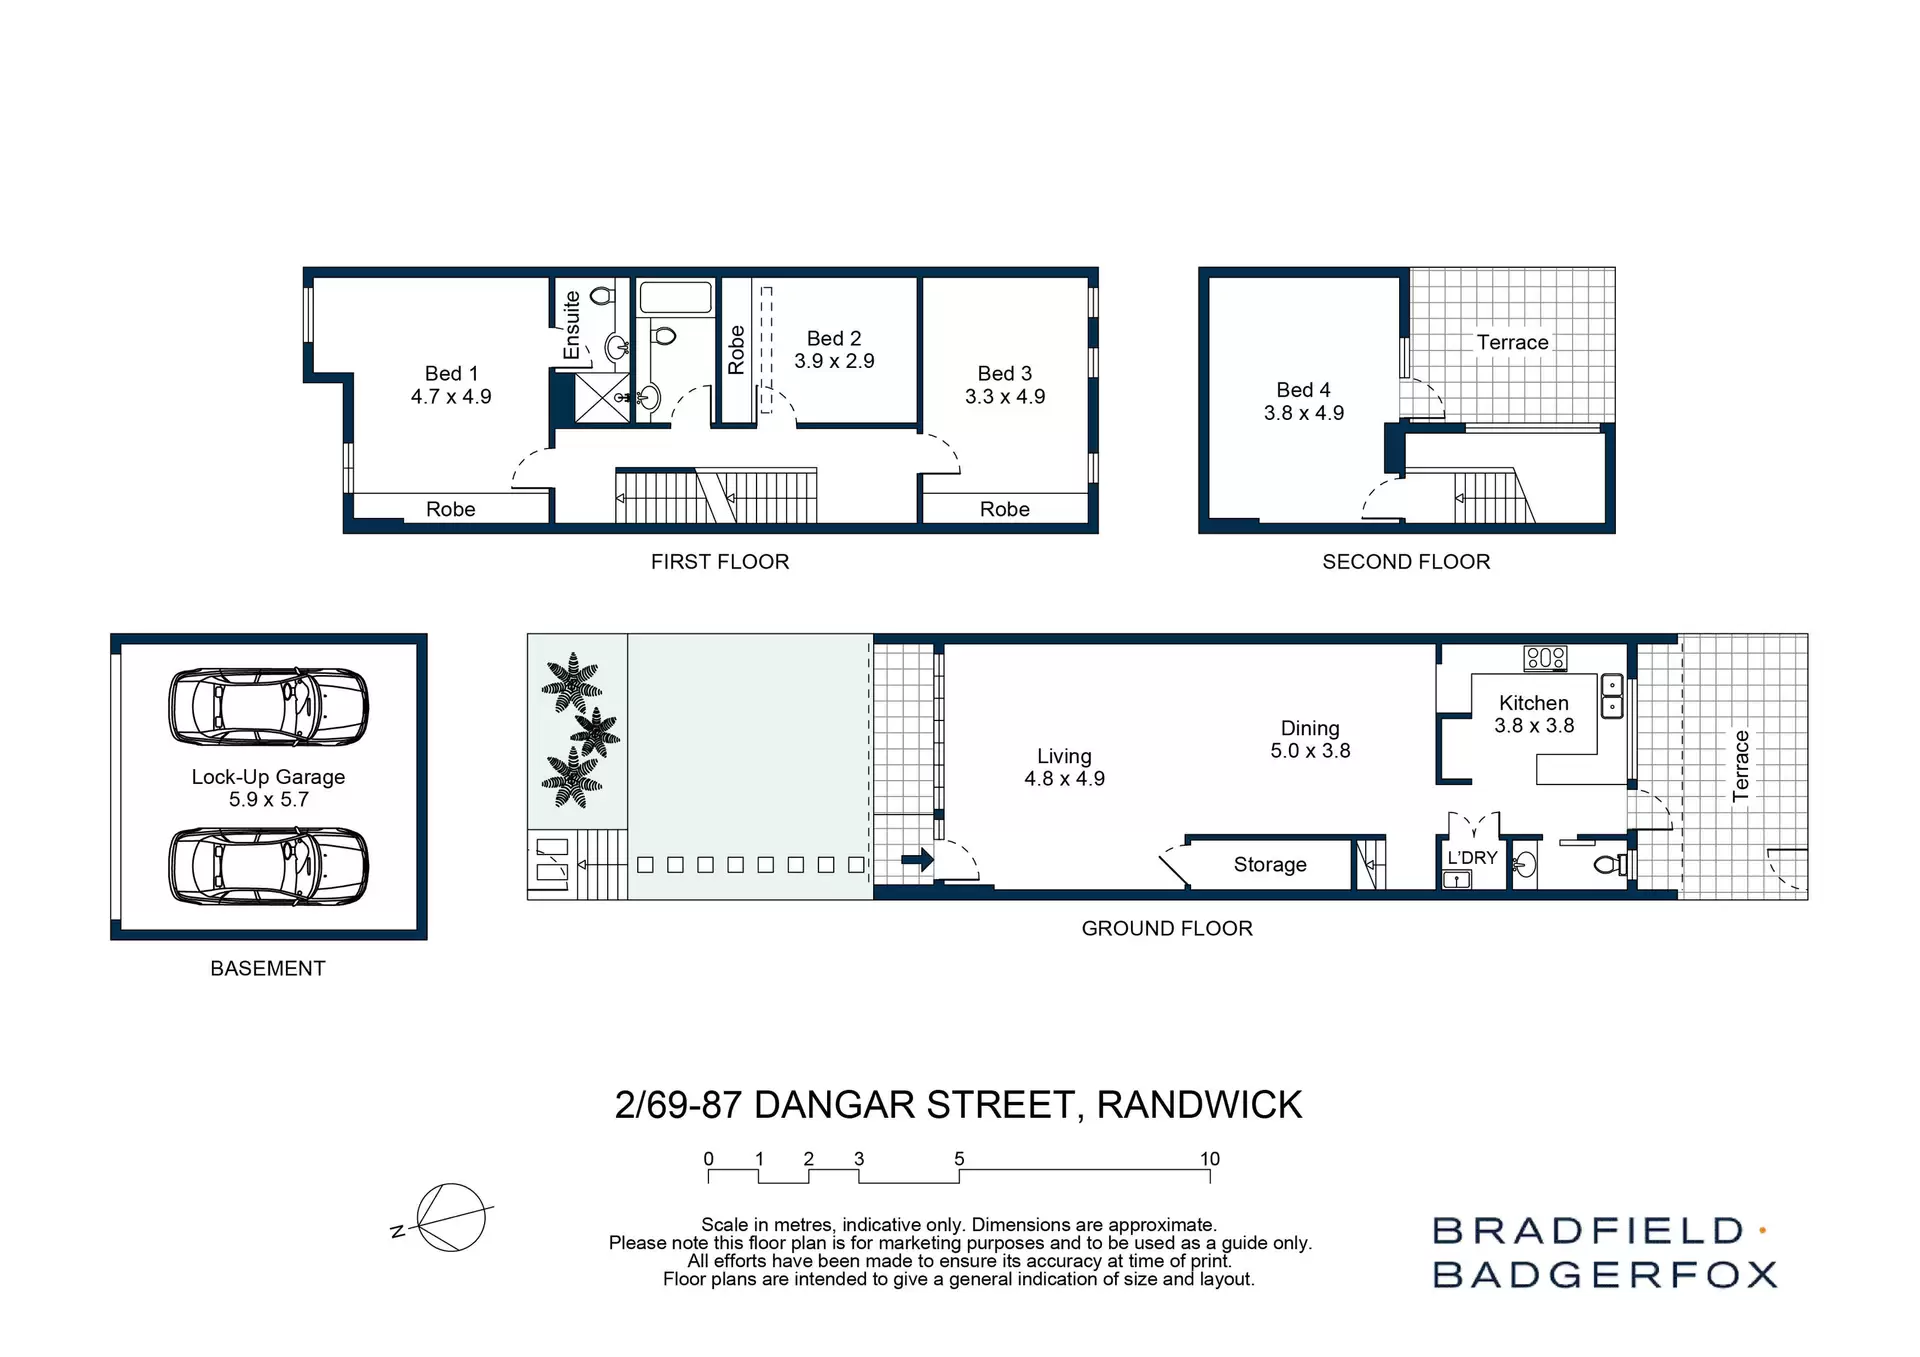 2/69-87 Dangar Street, Randwick Sold by Bradfield Badgerfox - image 1